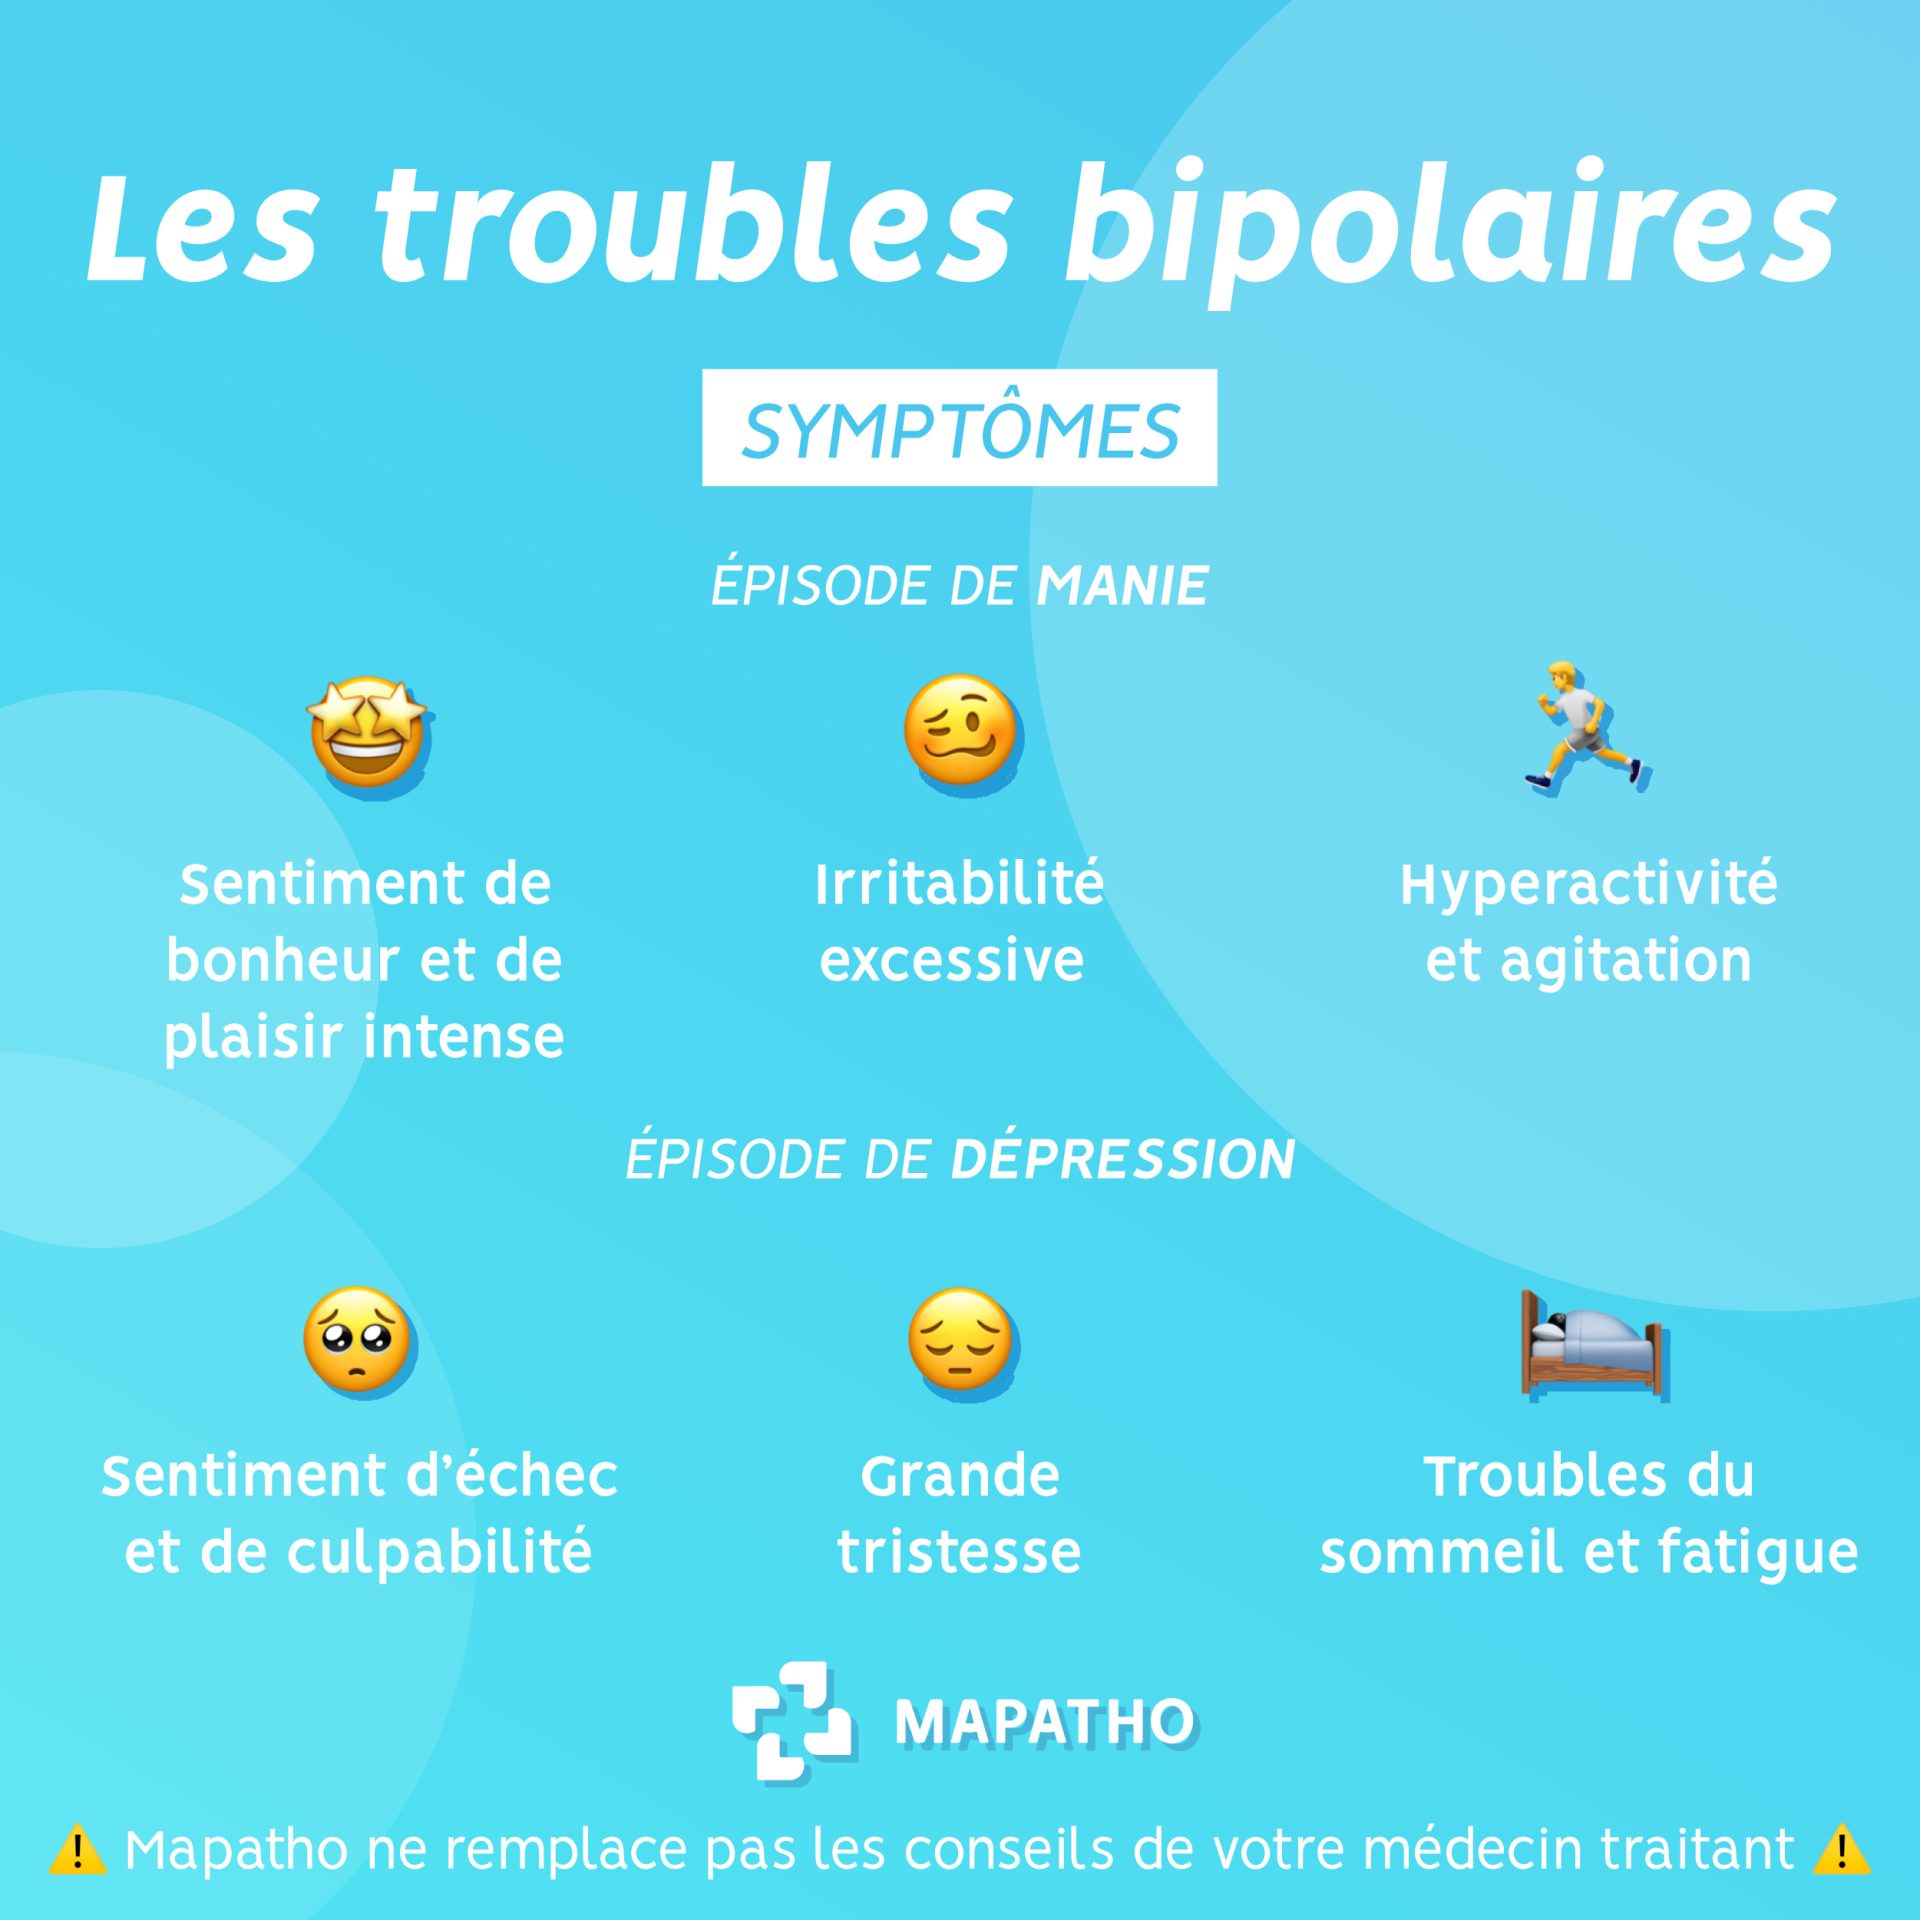 Les symptomes des troubles bipolaires